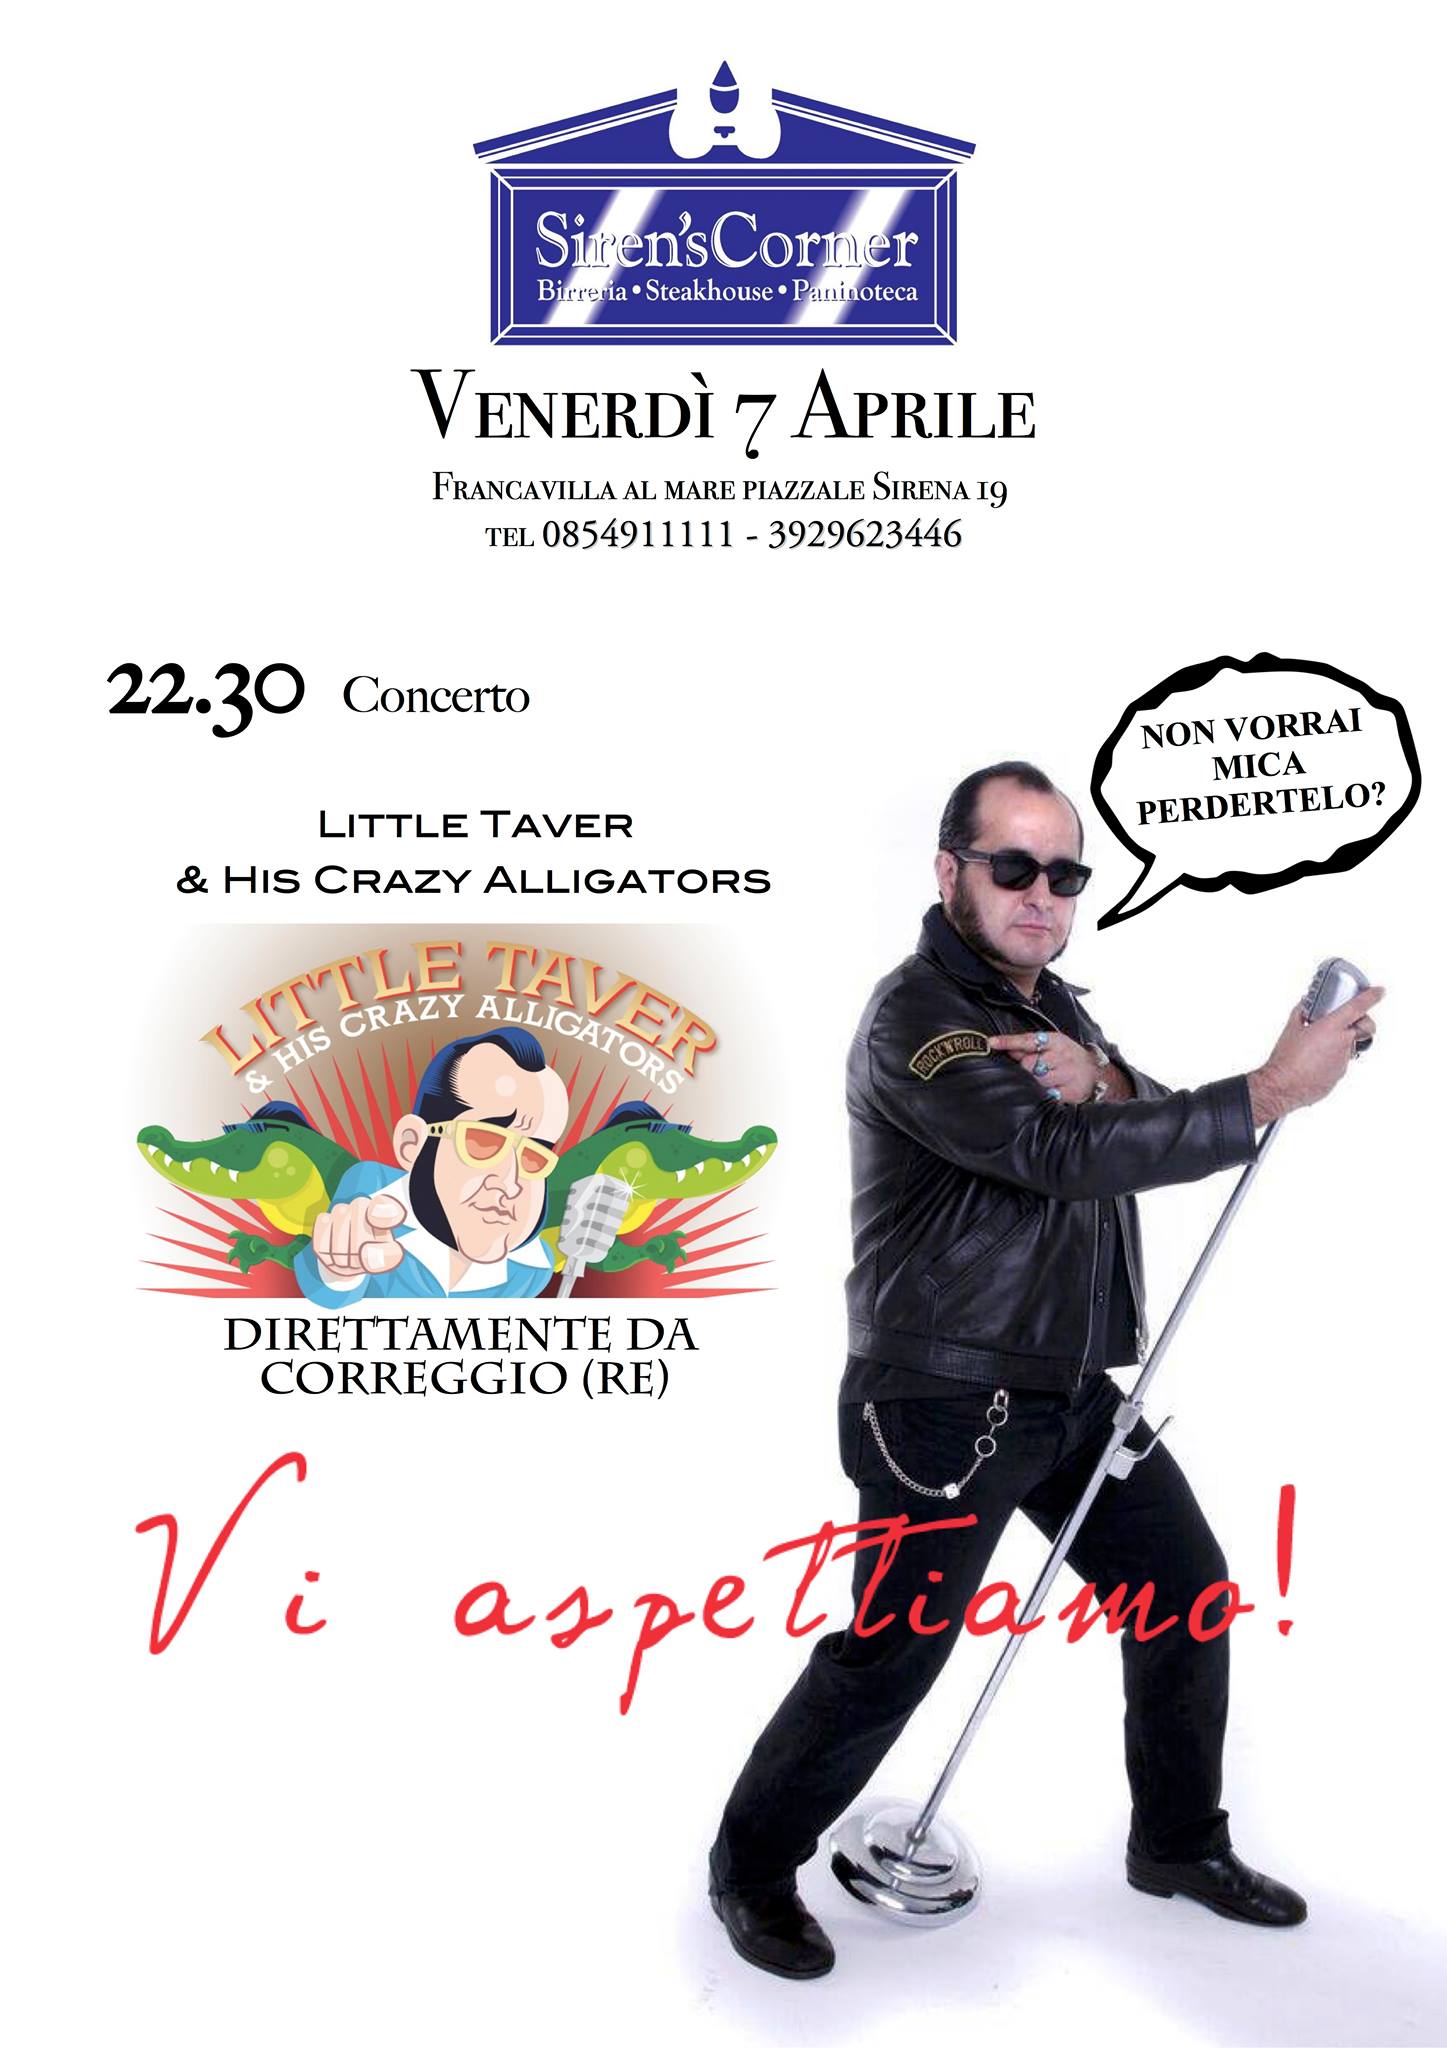 Home Abruzzo Francavilla al Mare: Little Taver in concerto, da ... - Il Martino (Satira) (Comunicati Stampa) (Blog)